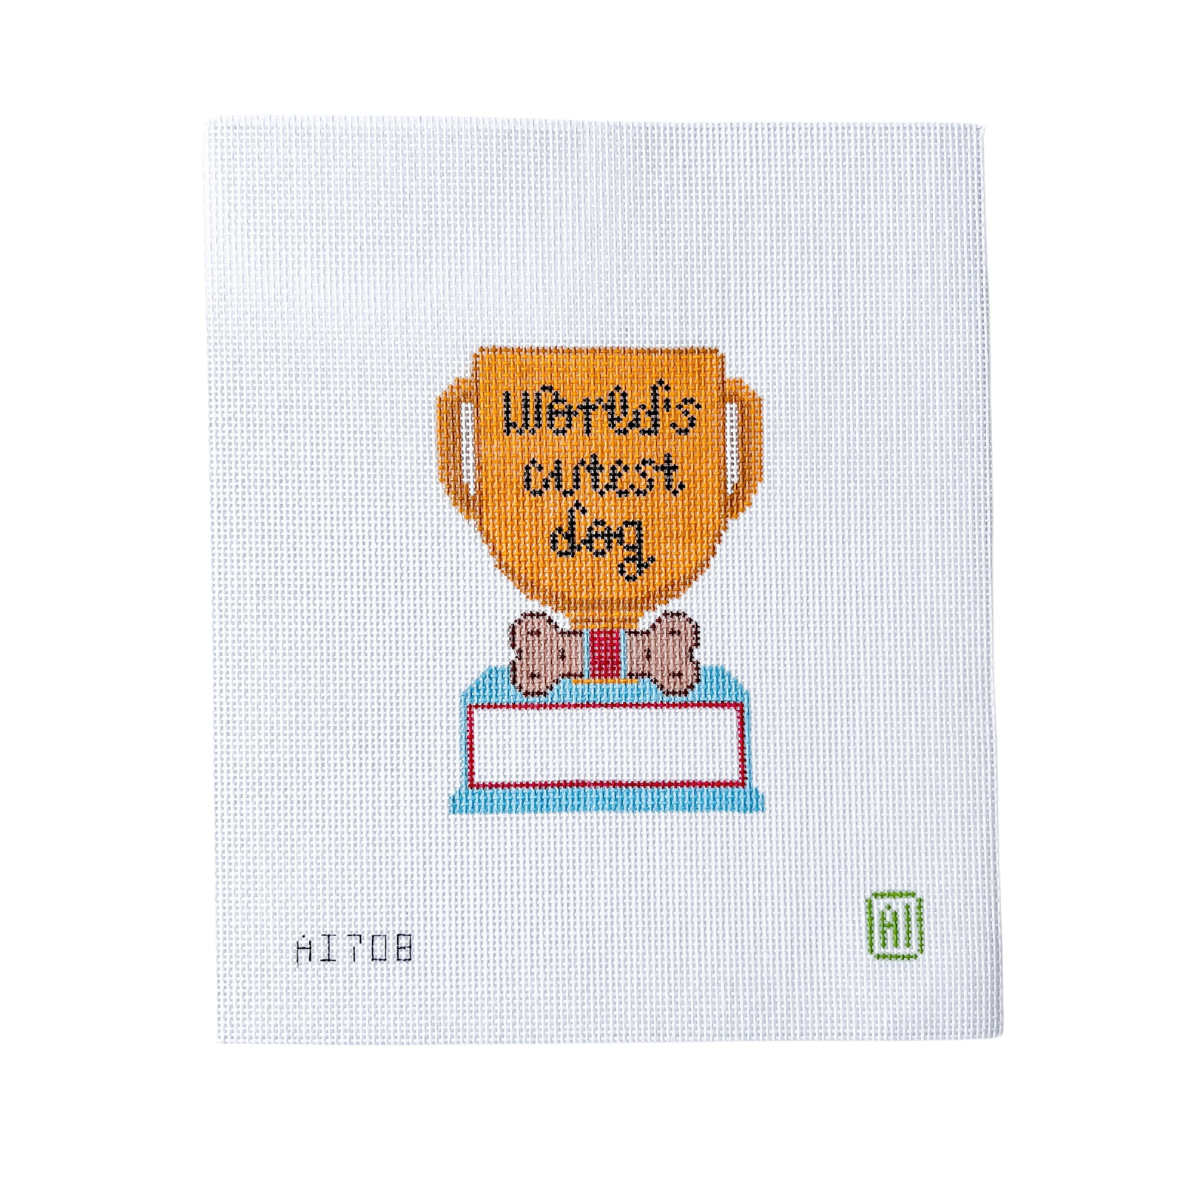 World's Cutest Dog Trophy